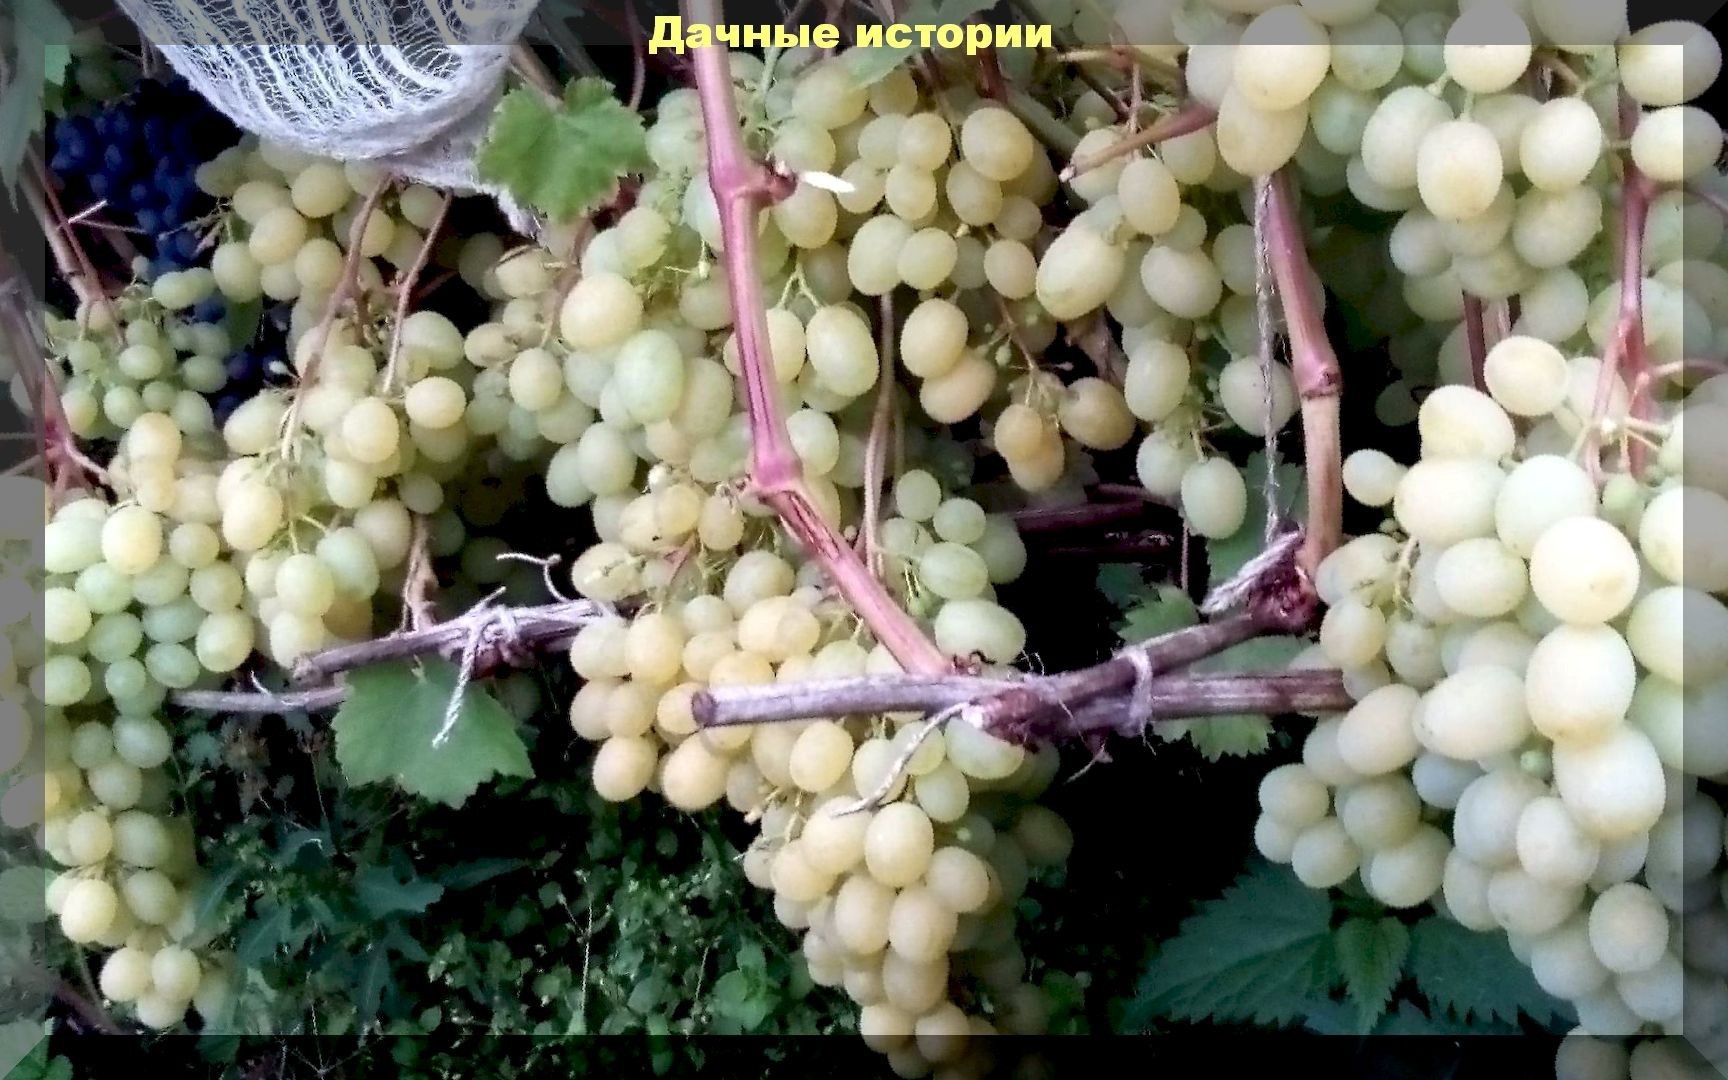 Виноградный урожай и уход за виноградом: подкормки, полив, обрезка